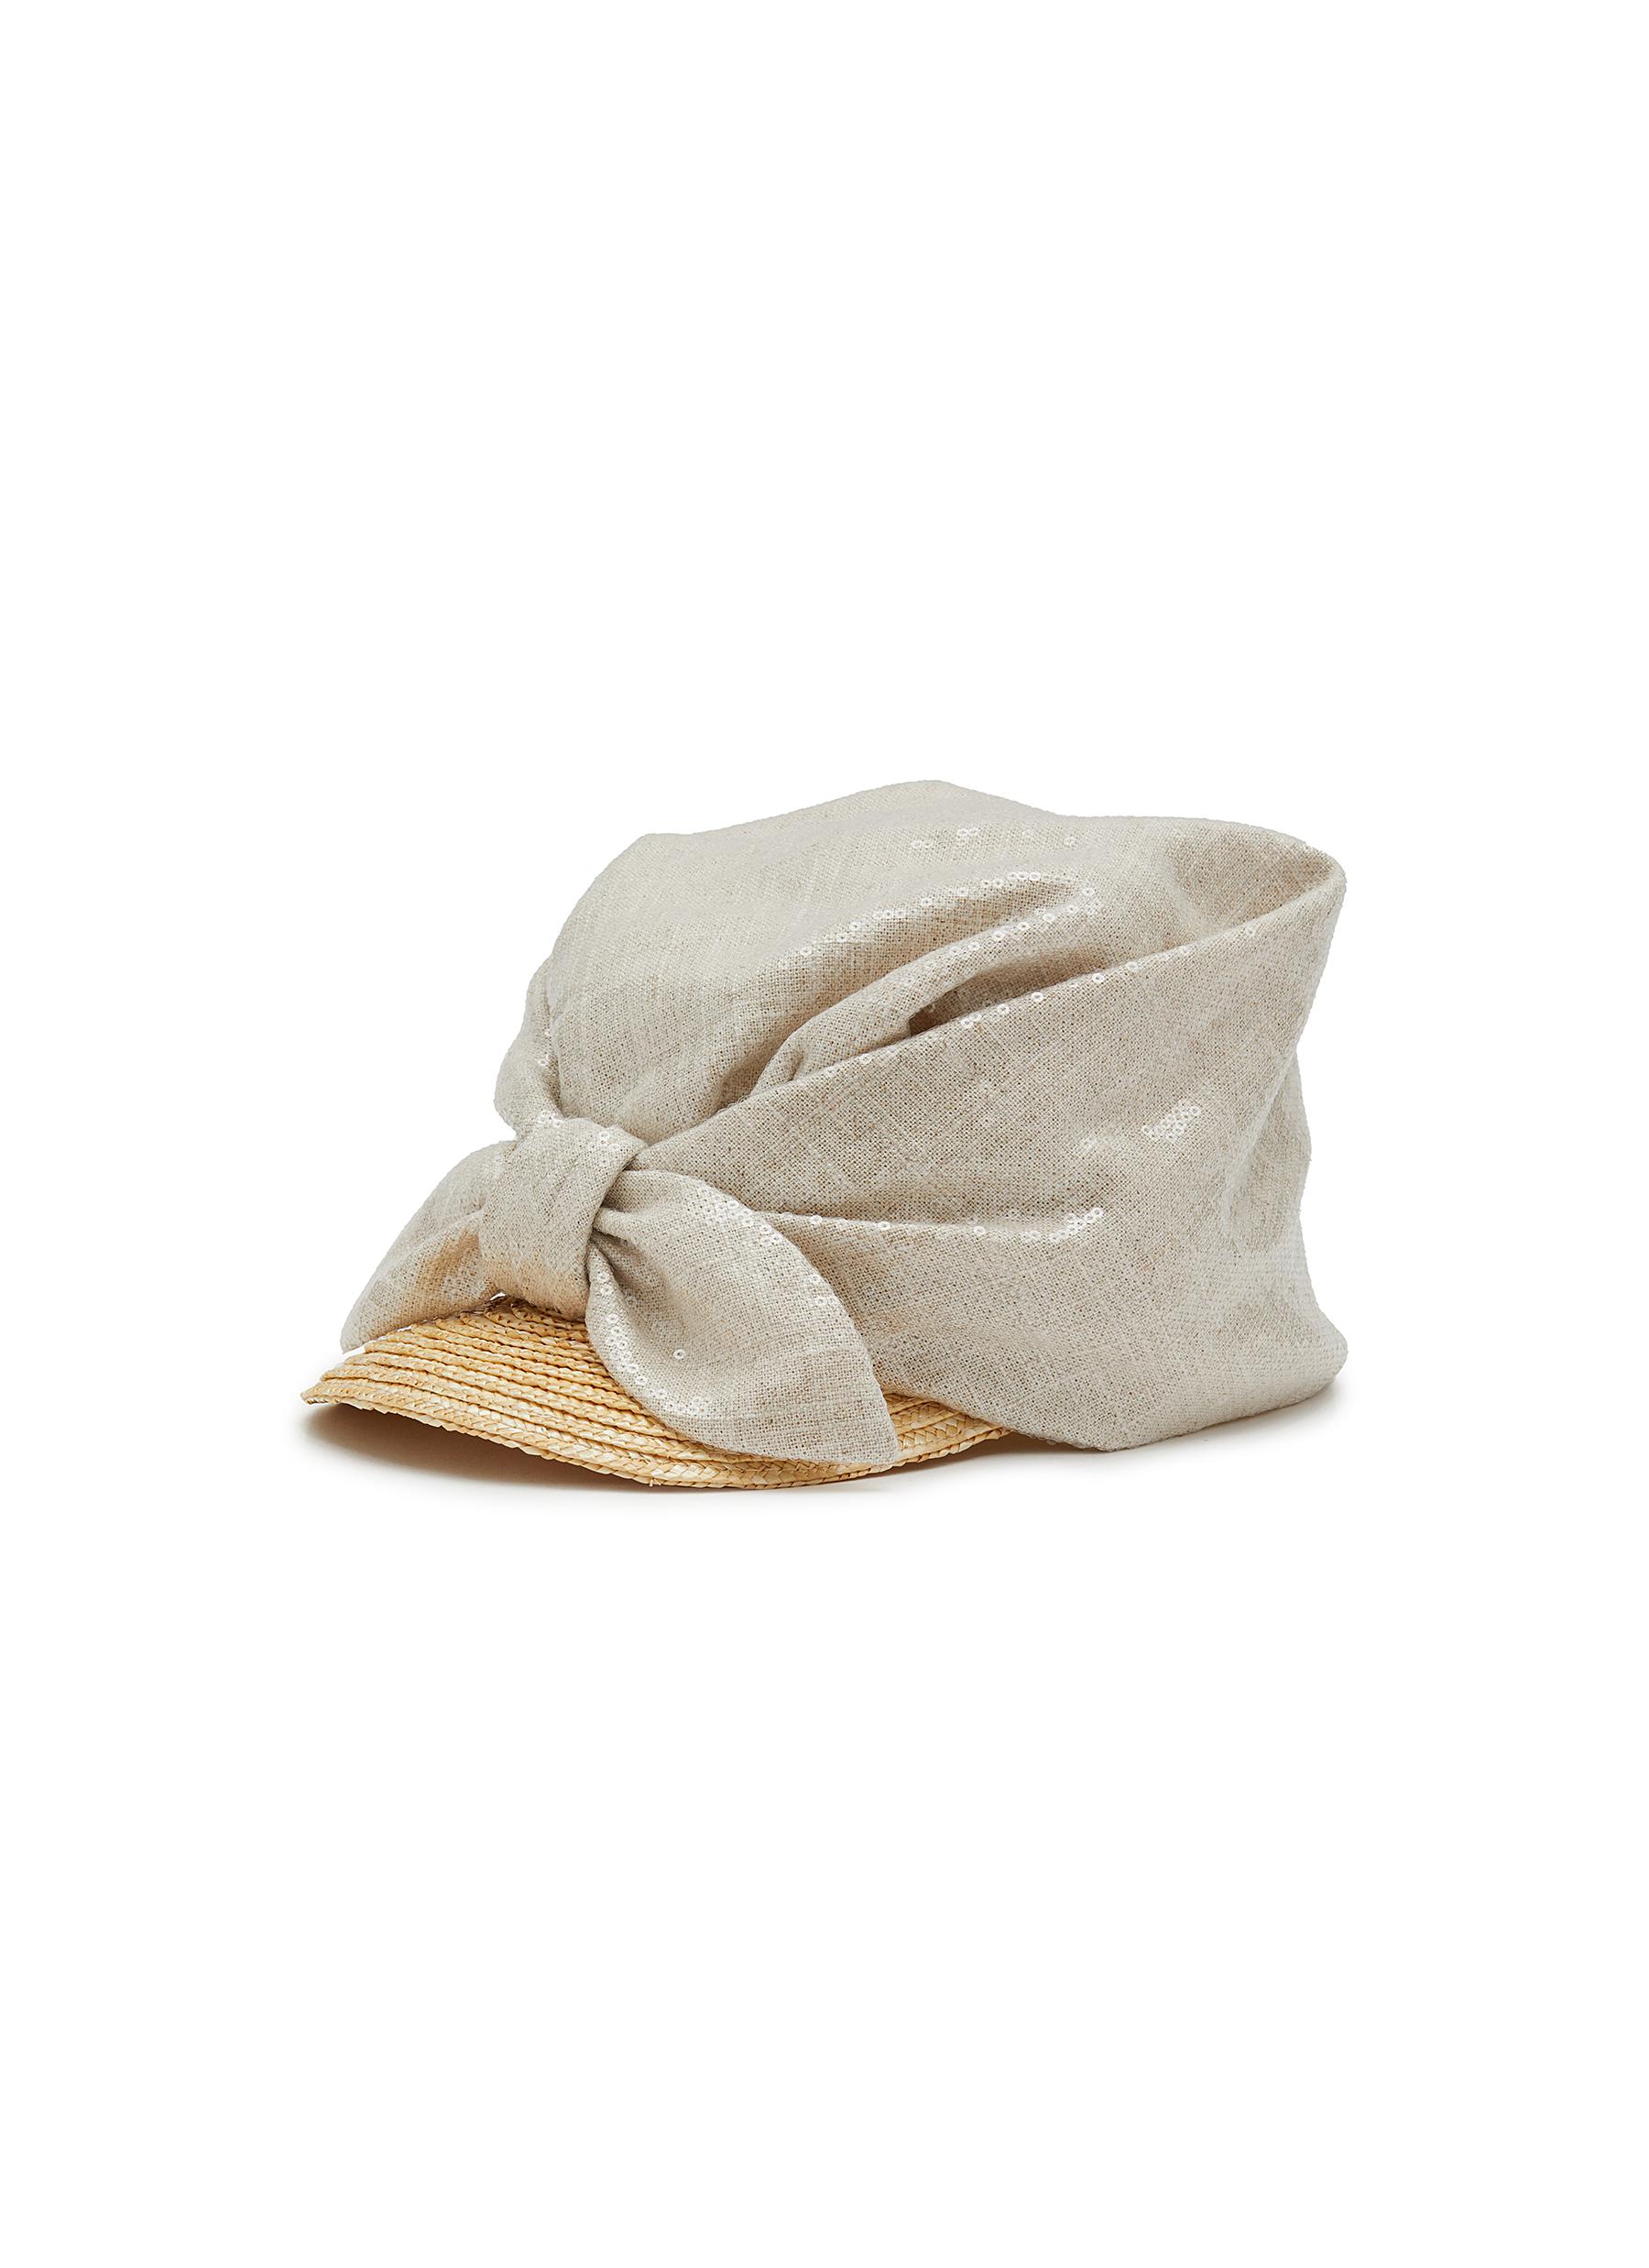 Bella Sequin Embellished Straw Hat